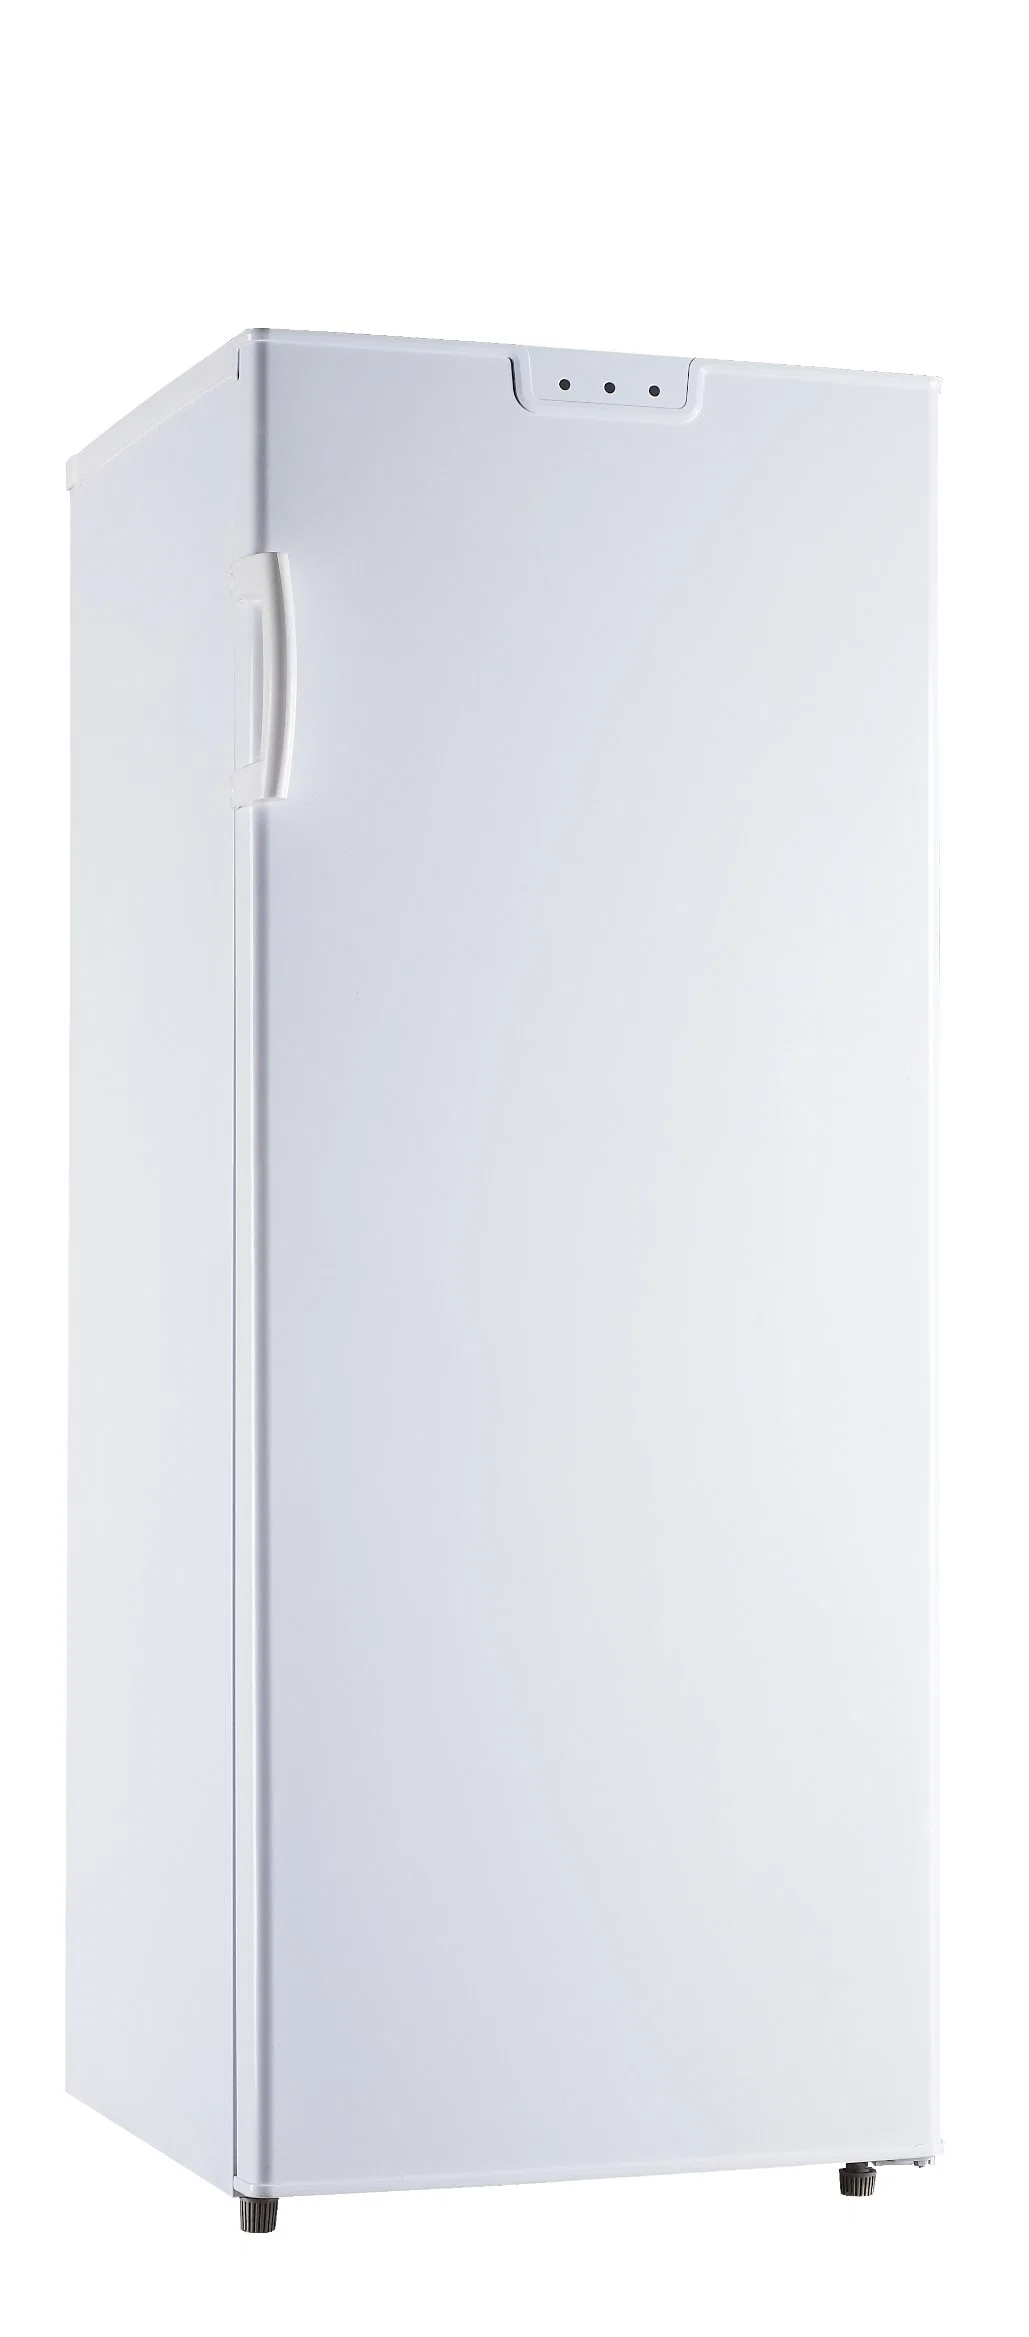 La parte superior abra Solar Mini nevera Refrigerador de temperatura electrónico Conntroller congeladores para Energía Solar y el hogar